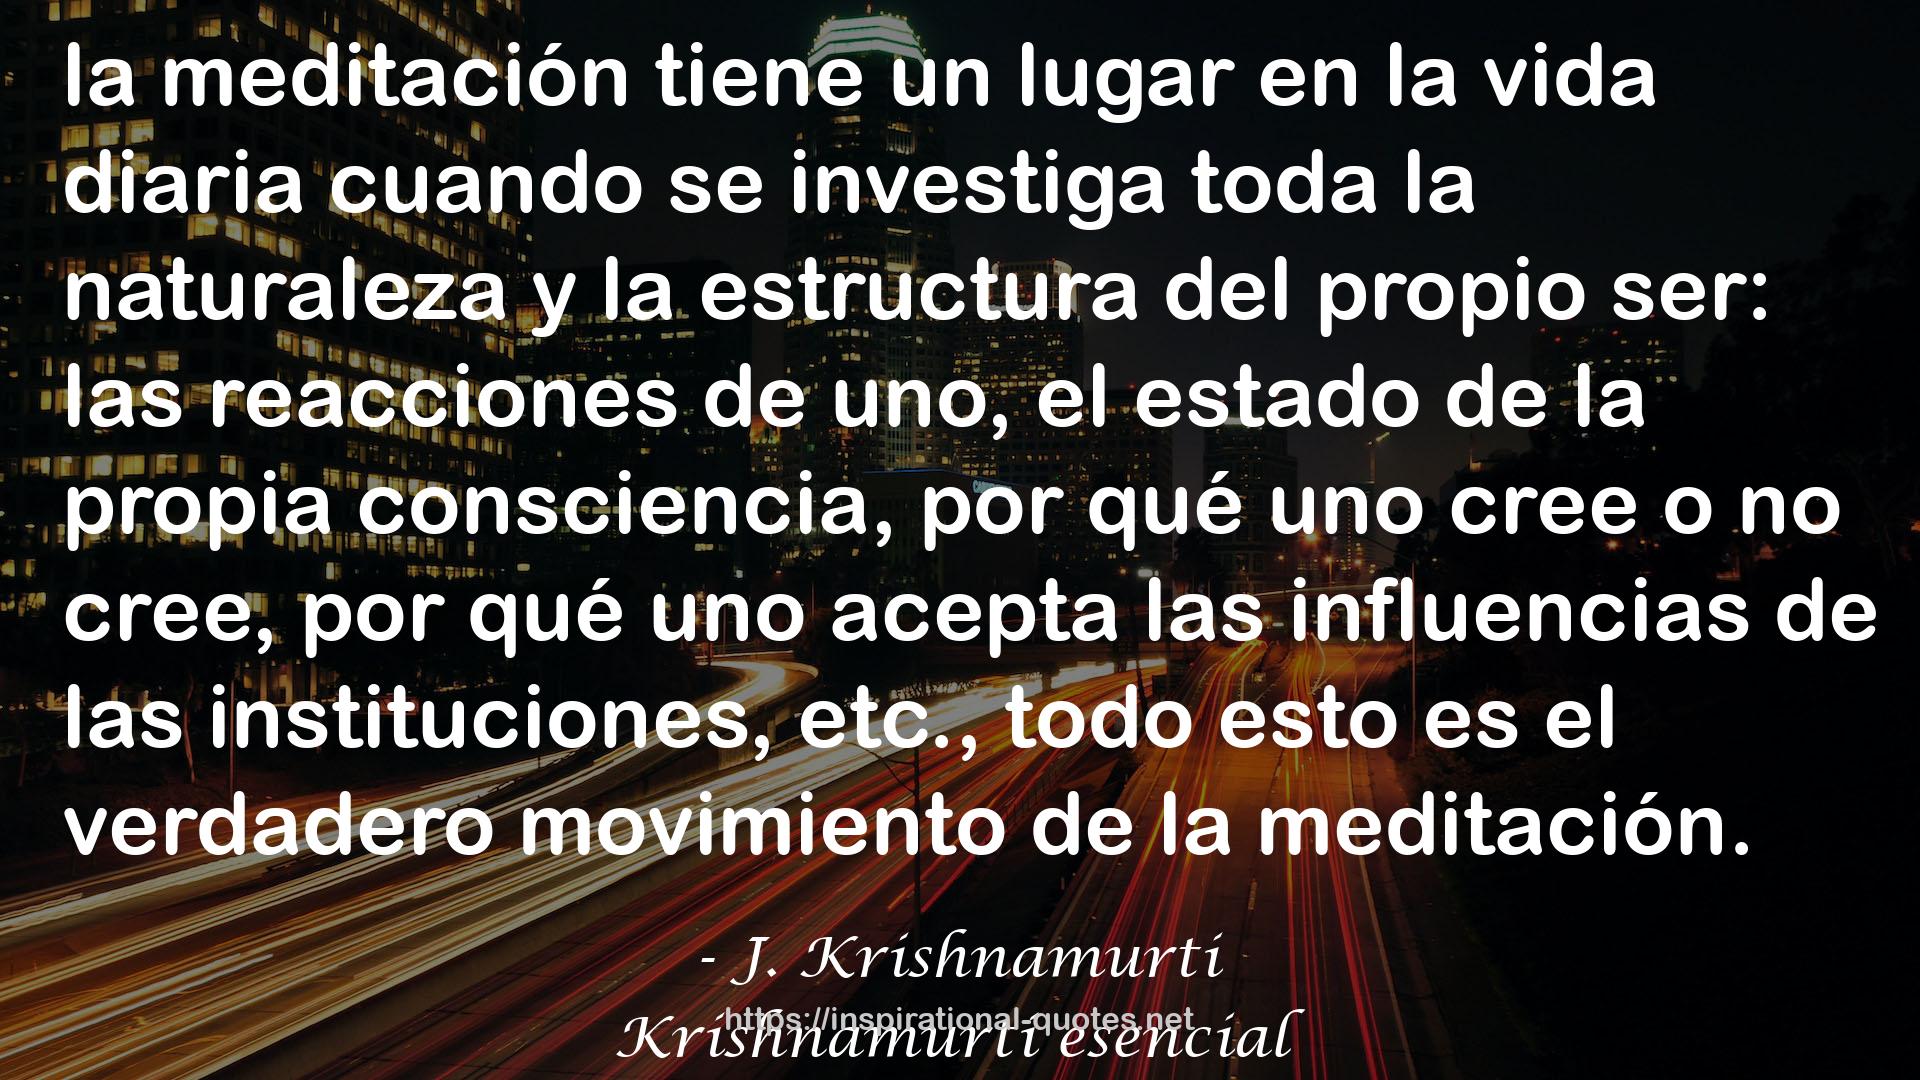 Krishnamurti esencial QUOTES